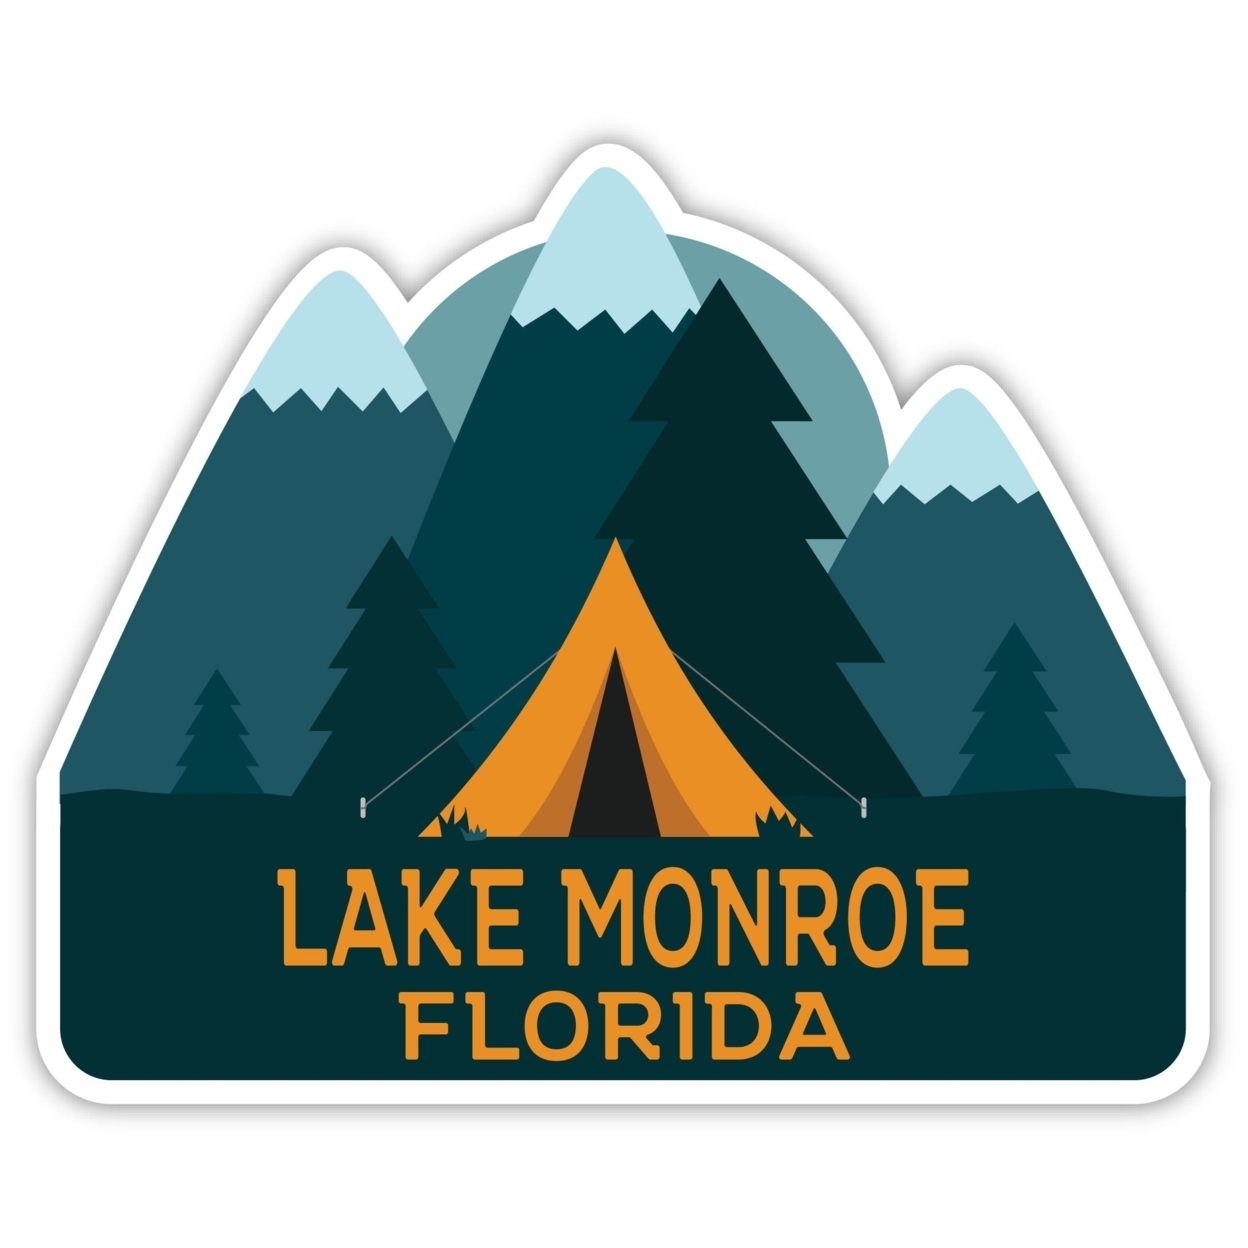 Lake Monroe Florida Souvenir Decorative Stickers (Choose Theme And Size) - 4-Inch, Bear